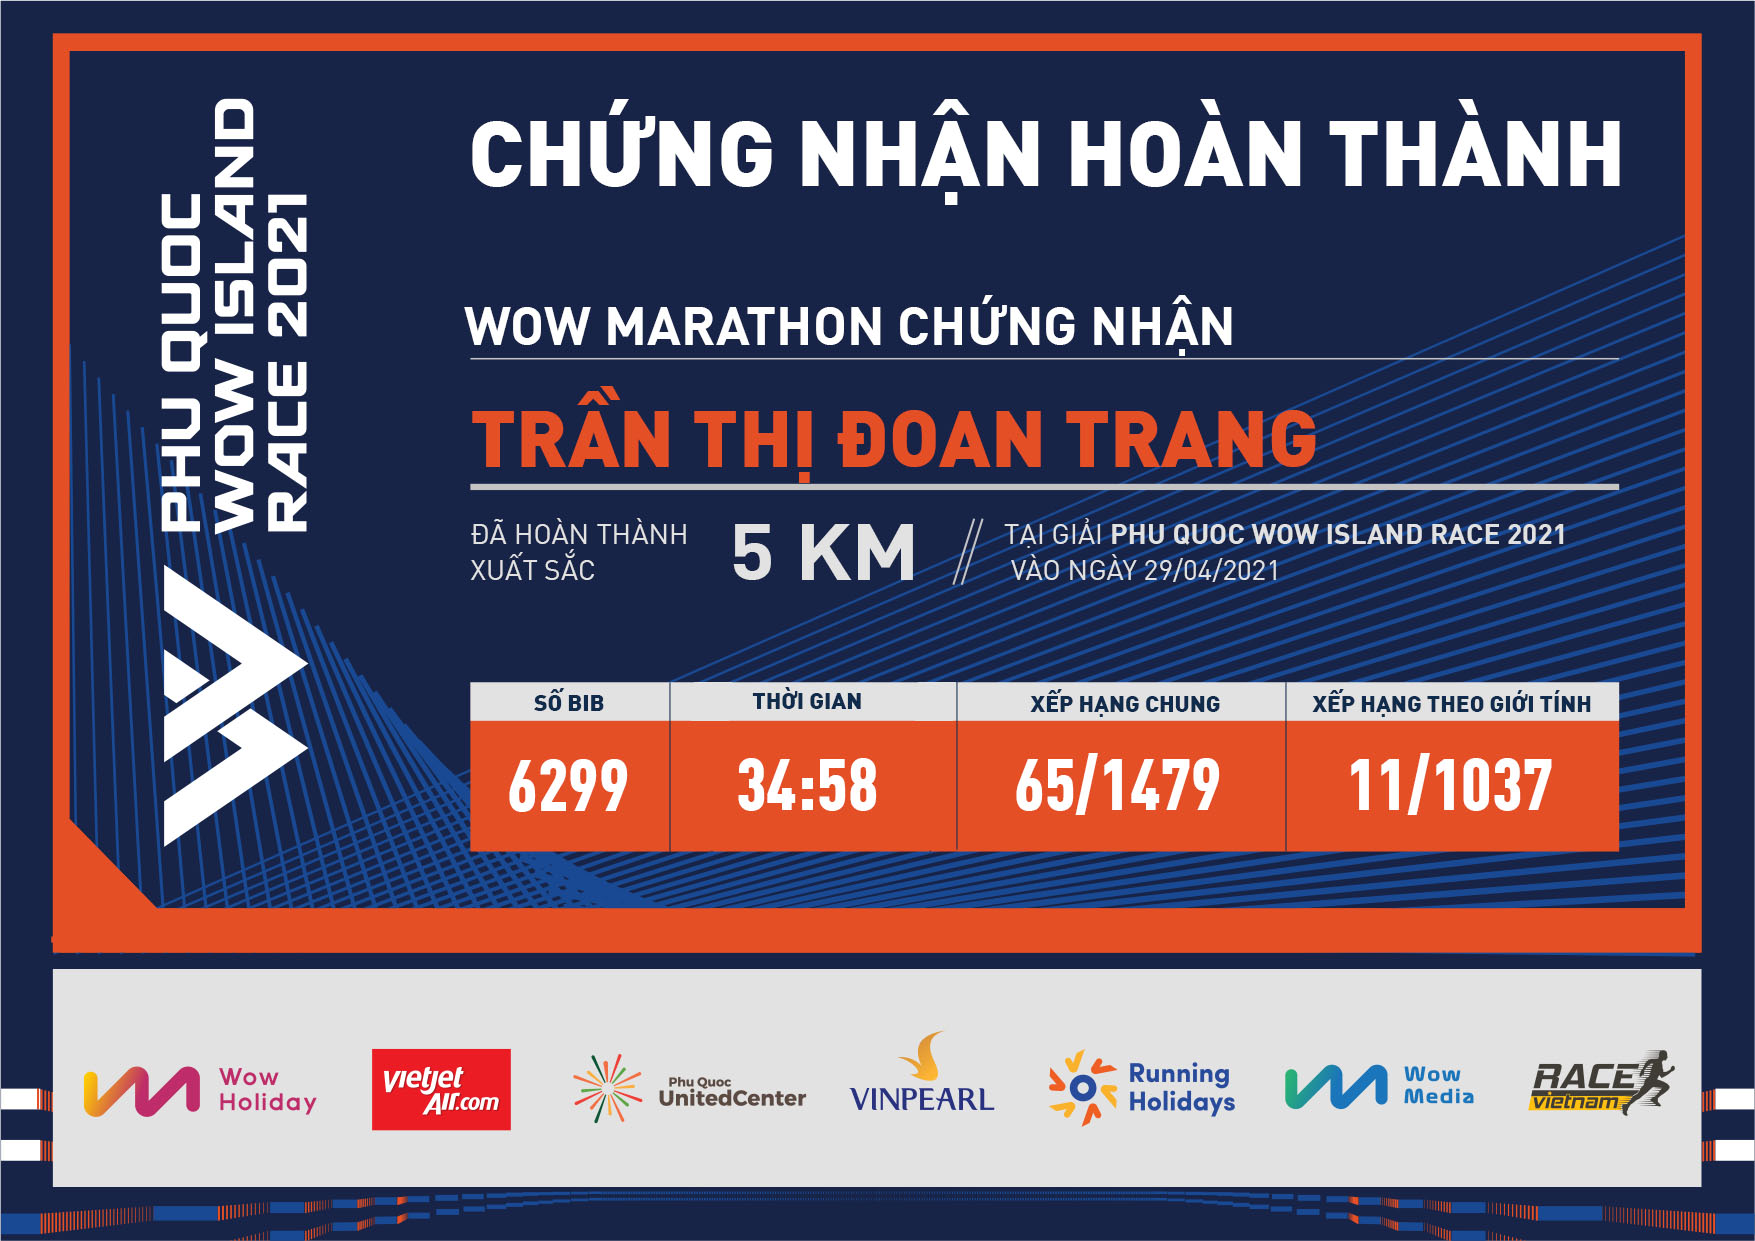 6299 - Trần Thị Đoan Trang